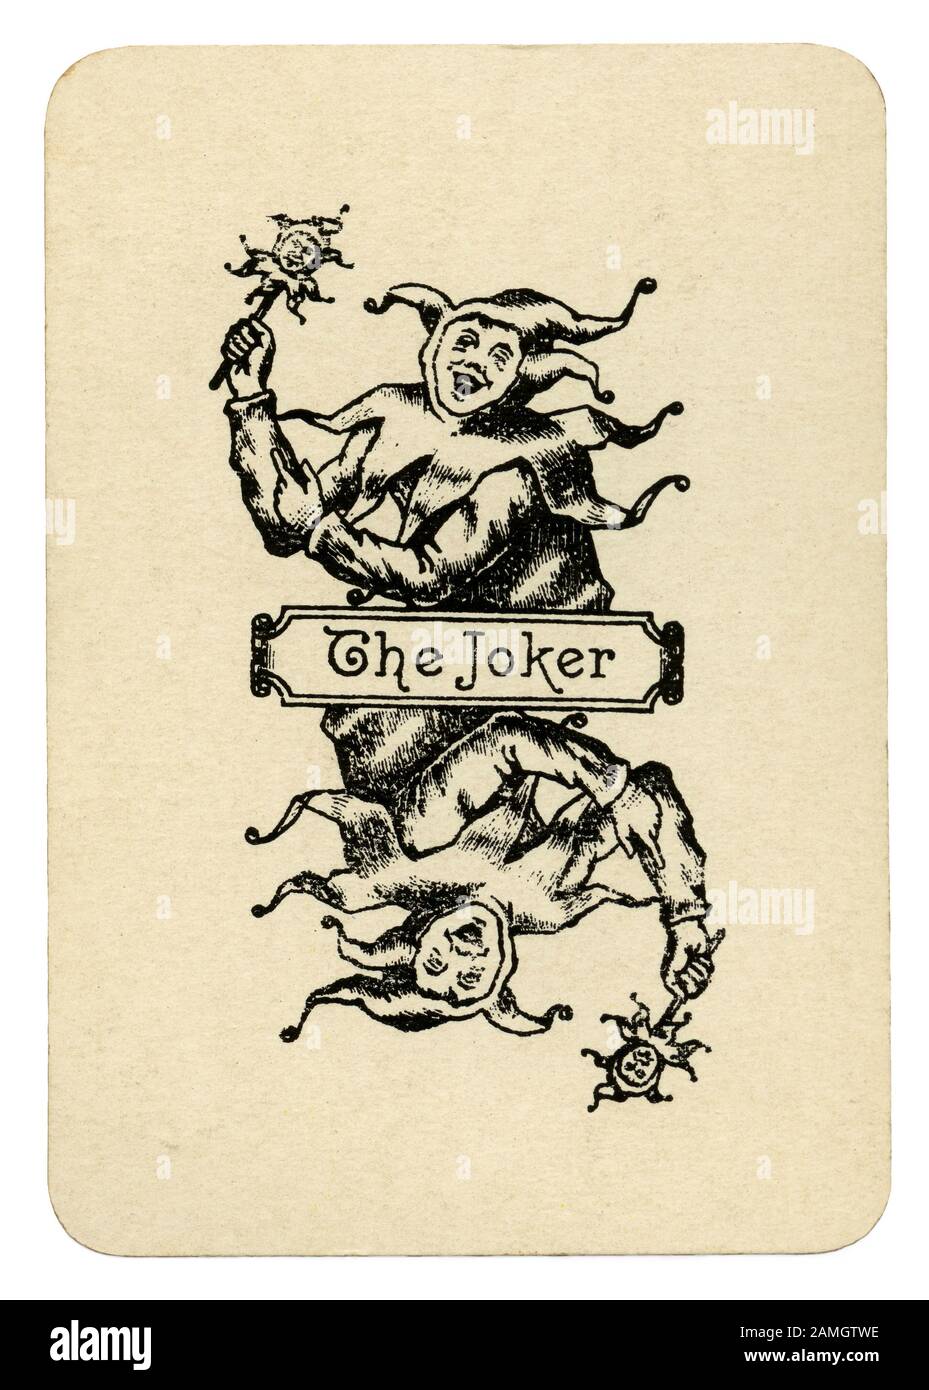 Un vieux jeu de carte avec une illustration de 'The Joker' - à partir d'un jeu de cartes de promotion d'un Clarke et l'ancienne Co Stirling Lowland Scotch whisky c.1910. La société a été fondée à Glasgow et Londres. Le Joker est représenté comme un fou ou imbécile et est titulaire d'un 'marotte' - un sceptre ou bâton prop avec une tête sculptée sur elle. À partir de l'anglais, c'est un marché de Noël' ou '(hochet) - souvent avec de petites cloches. Porté par un fou ou arlequin, la tête miniature reflète souvent (comme ici) le costume du bouffon qui transporte. Banque D'Images